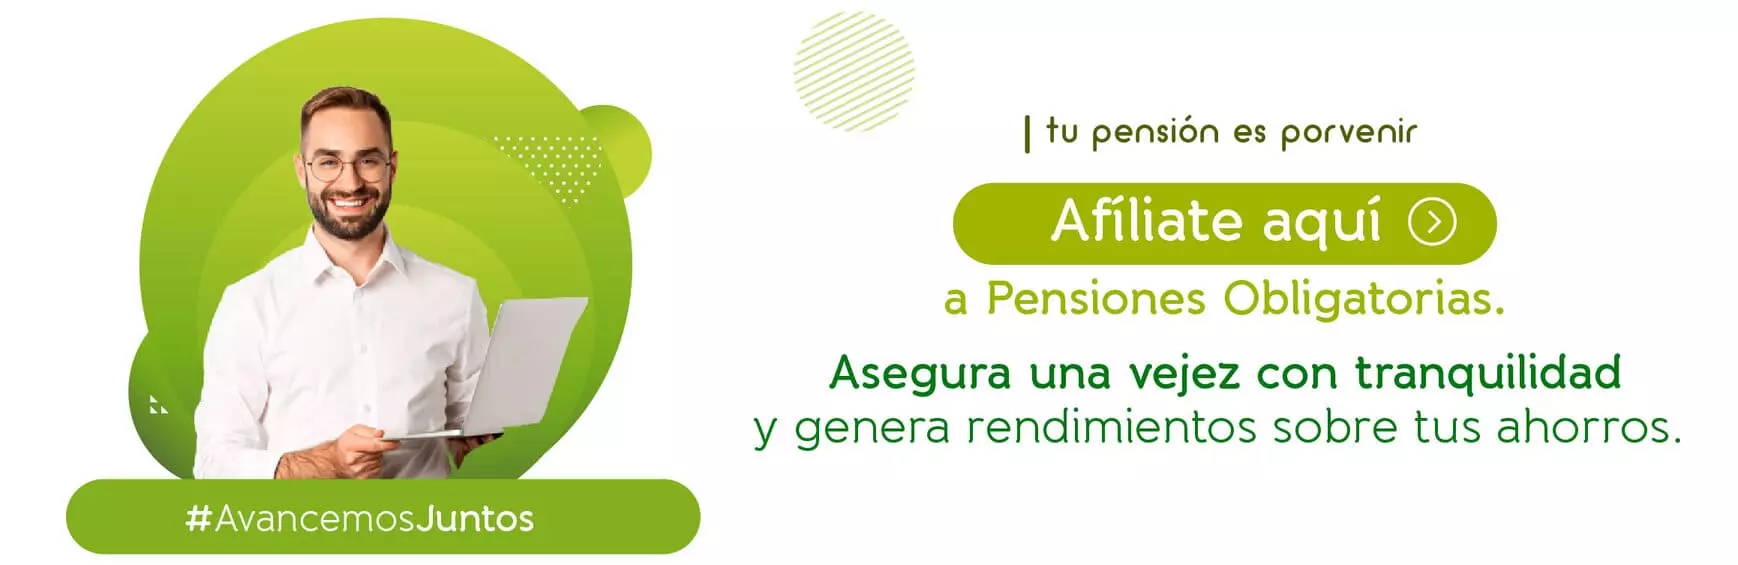 Afiliacion a pensiones